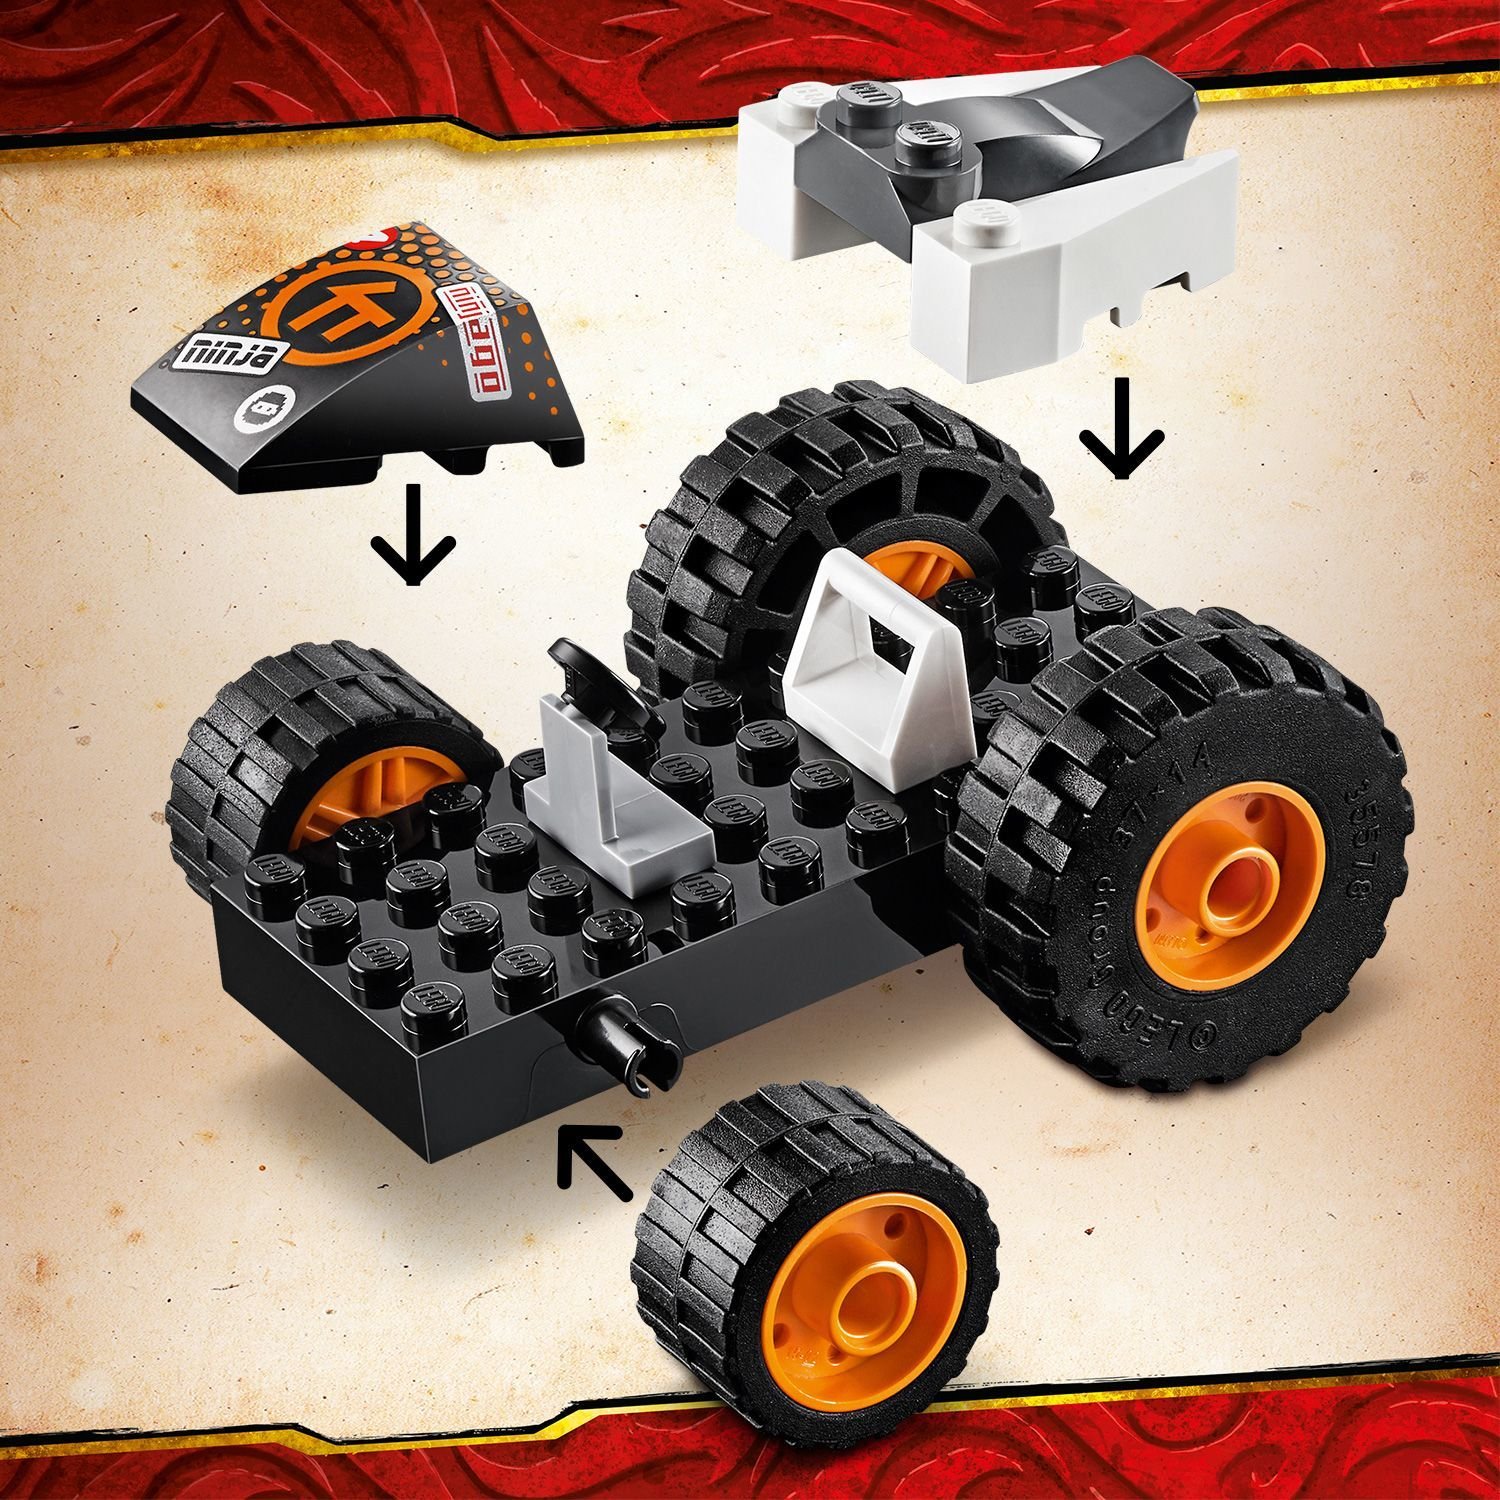 Lego Ninjago 71706 Скоростной автомобиль Коула